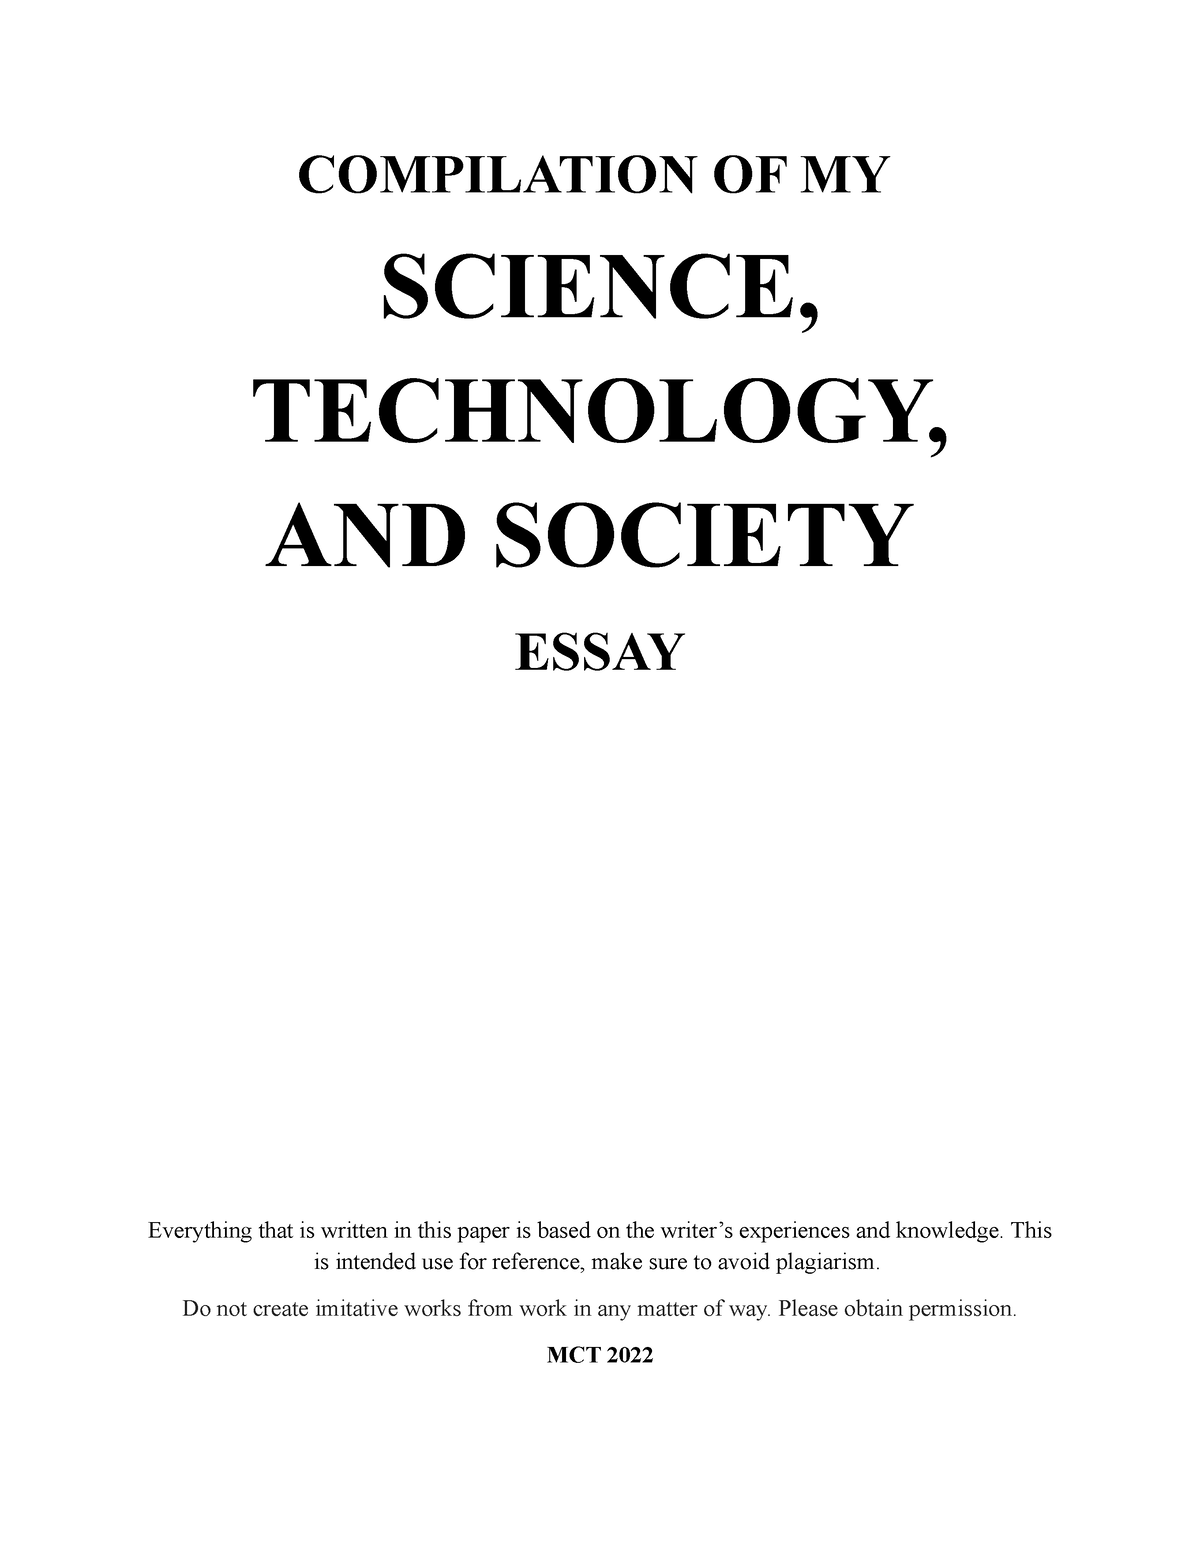 technology and society essay topics